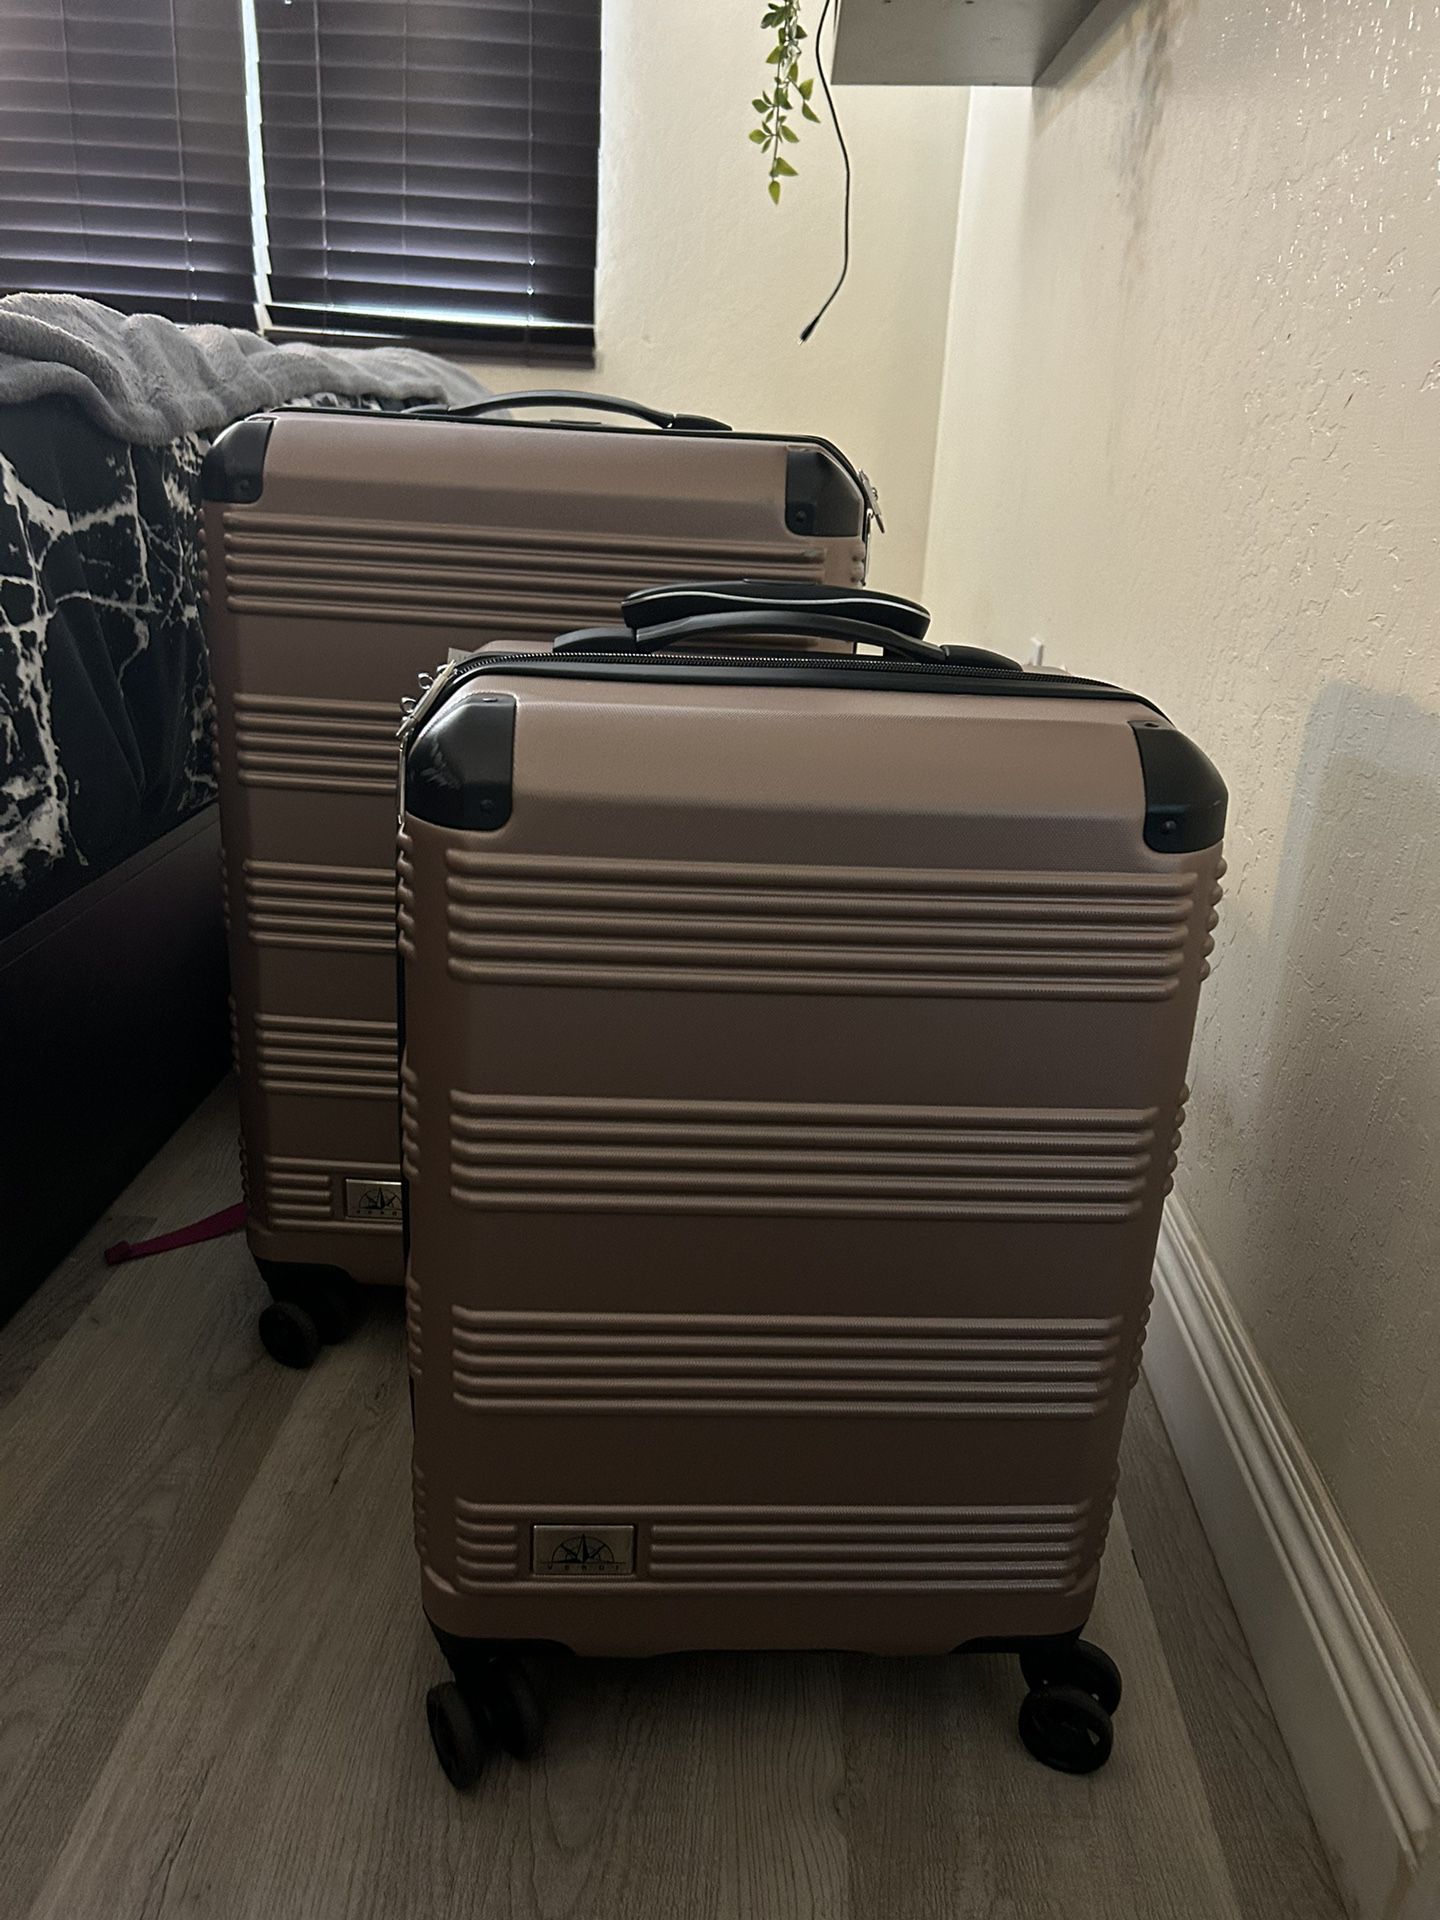 Two Hardshell Luggage